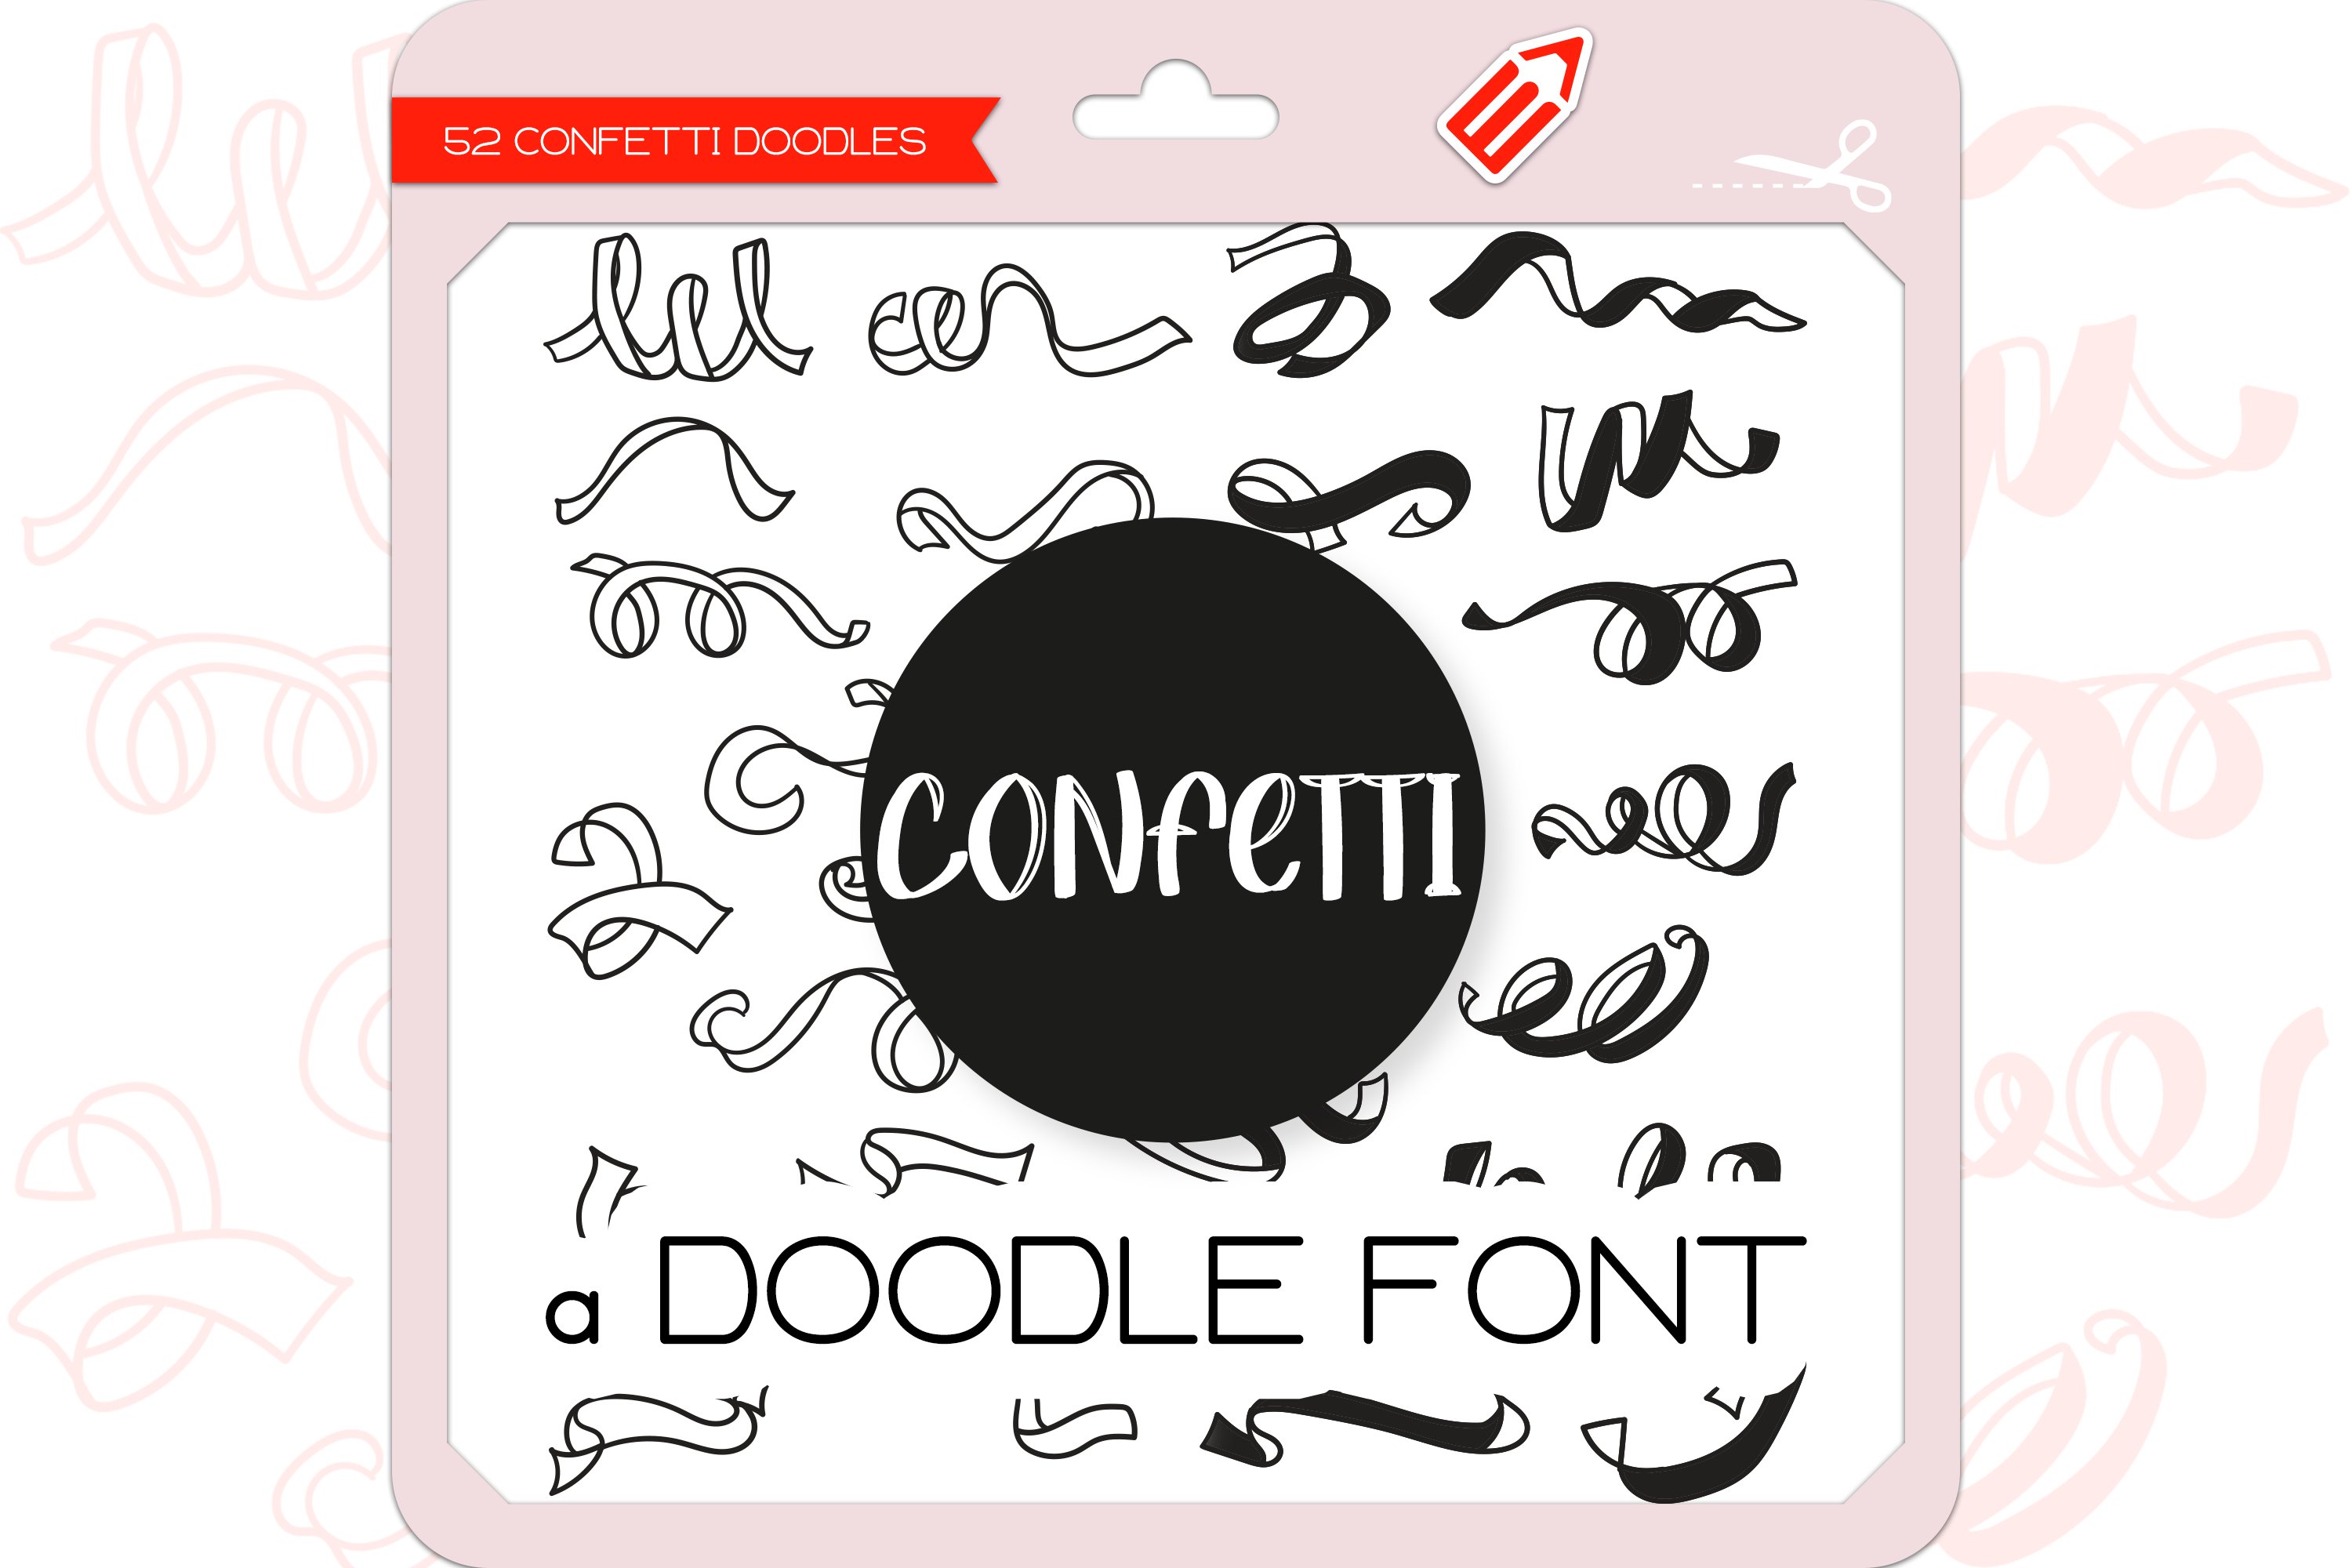 Confetti Doodles - Dingbats Font cover image.